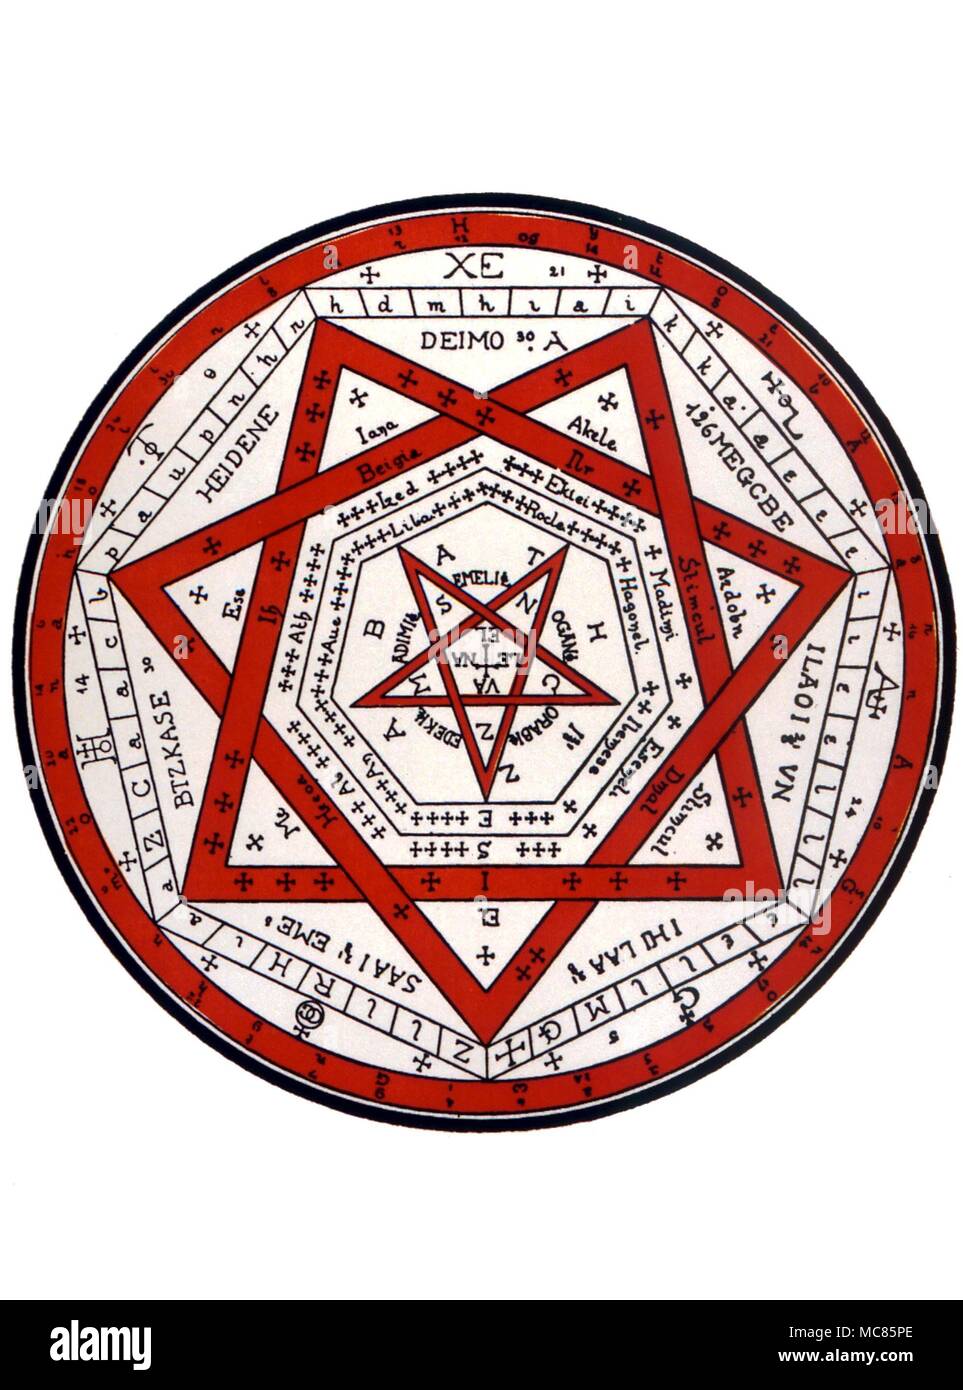 Sello de GRIMORIO Aemeth Un sello utilizado en conjunción con la mágica Tablas de Enoc empleadas por John Dee, el astrólogo/mago Foto de stock